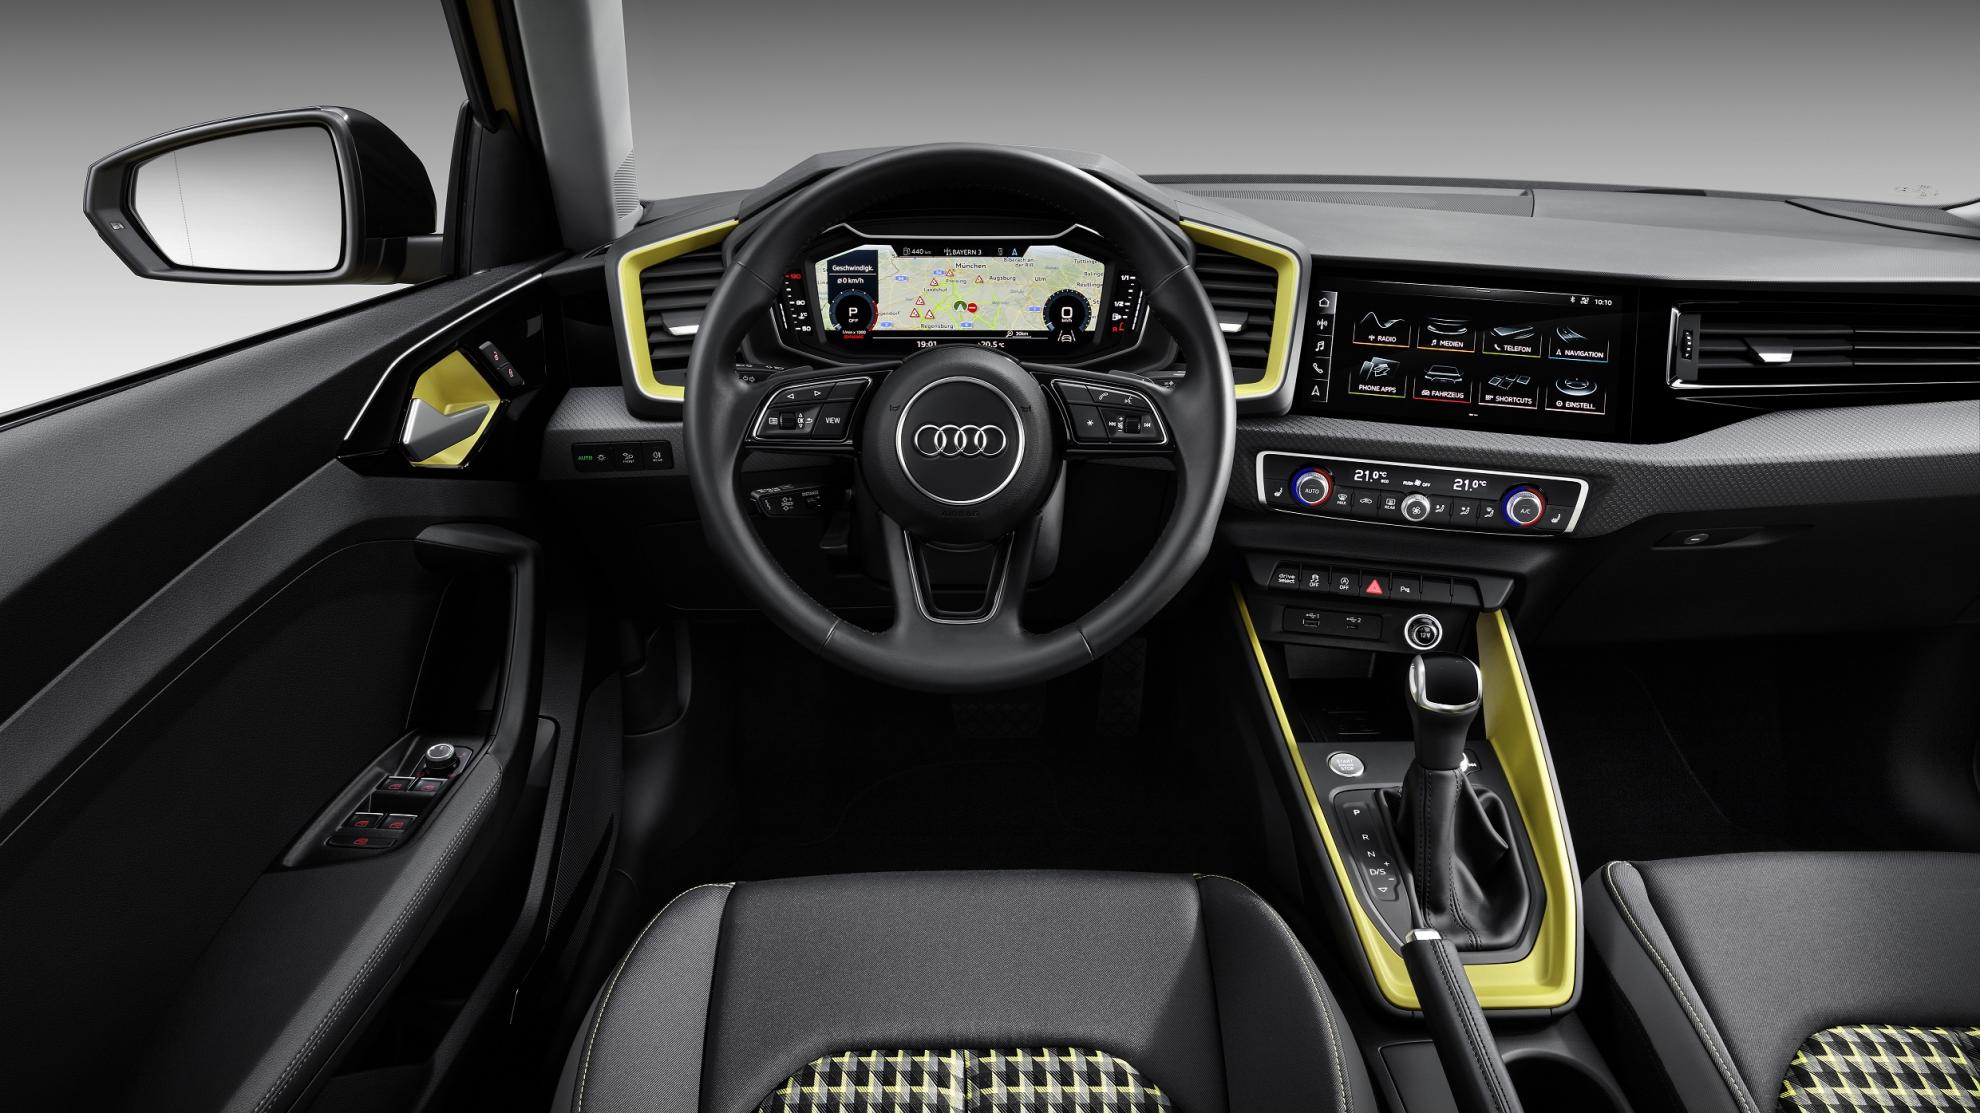 Bienvenue à bord de l'Audi A1 Sportback